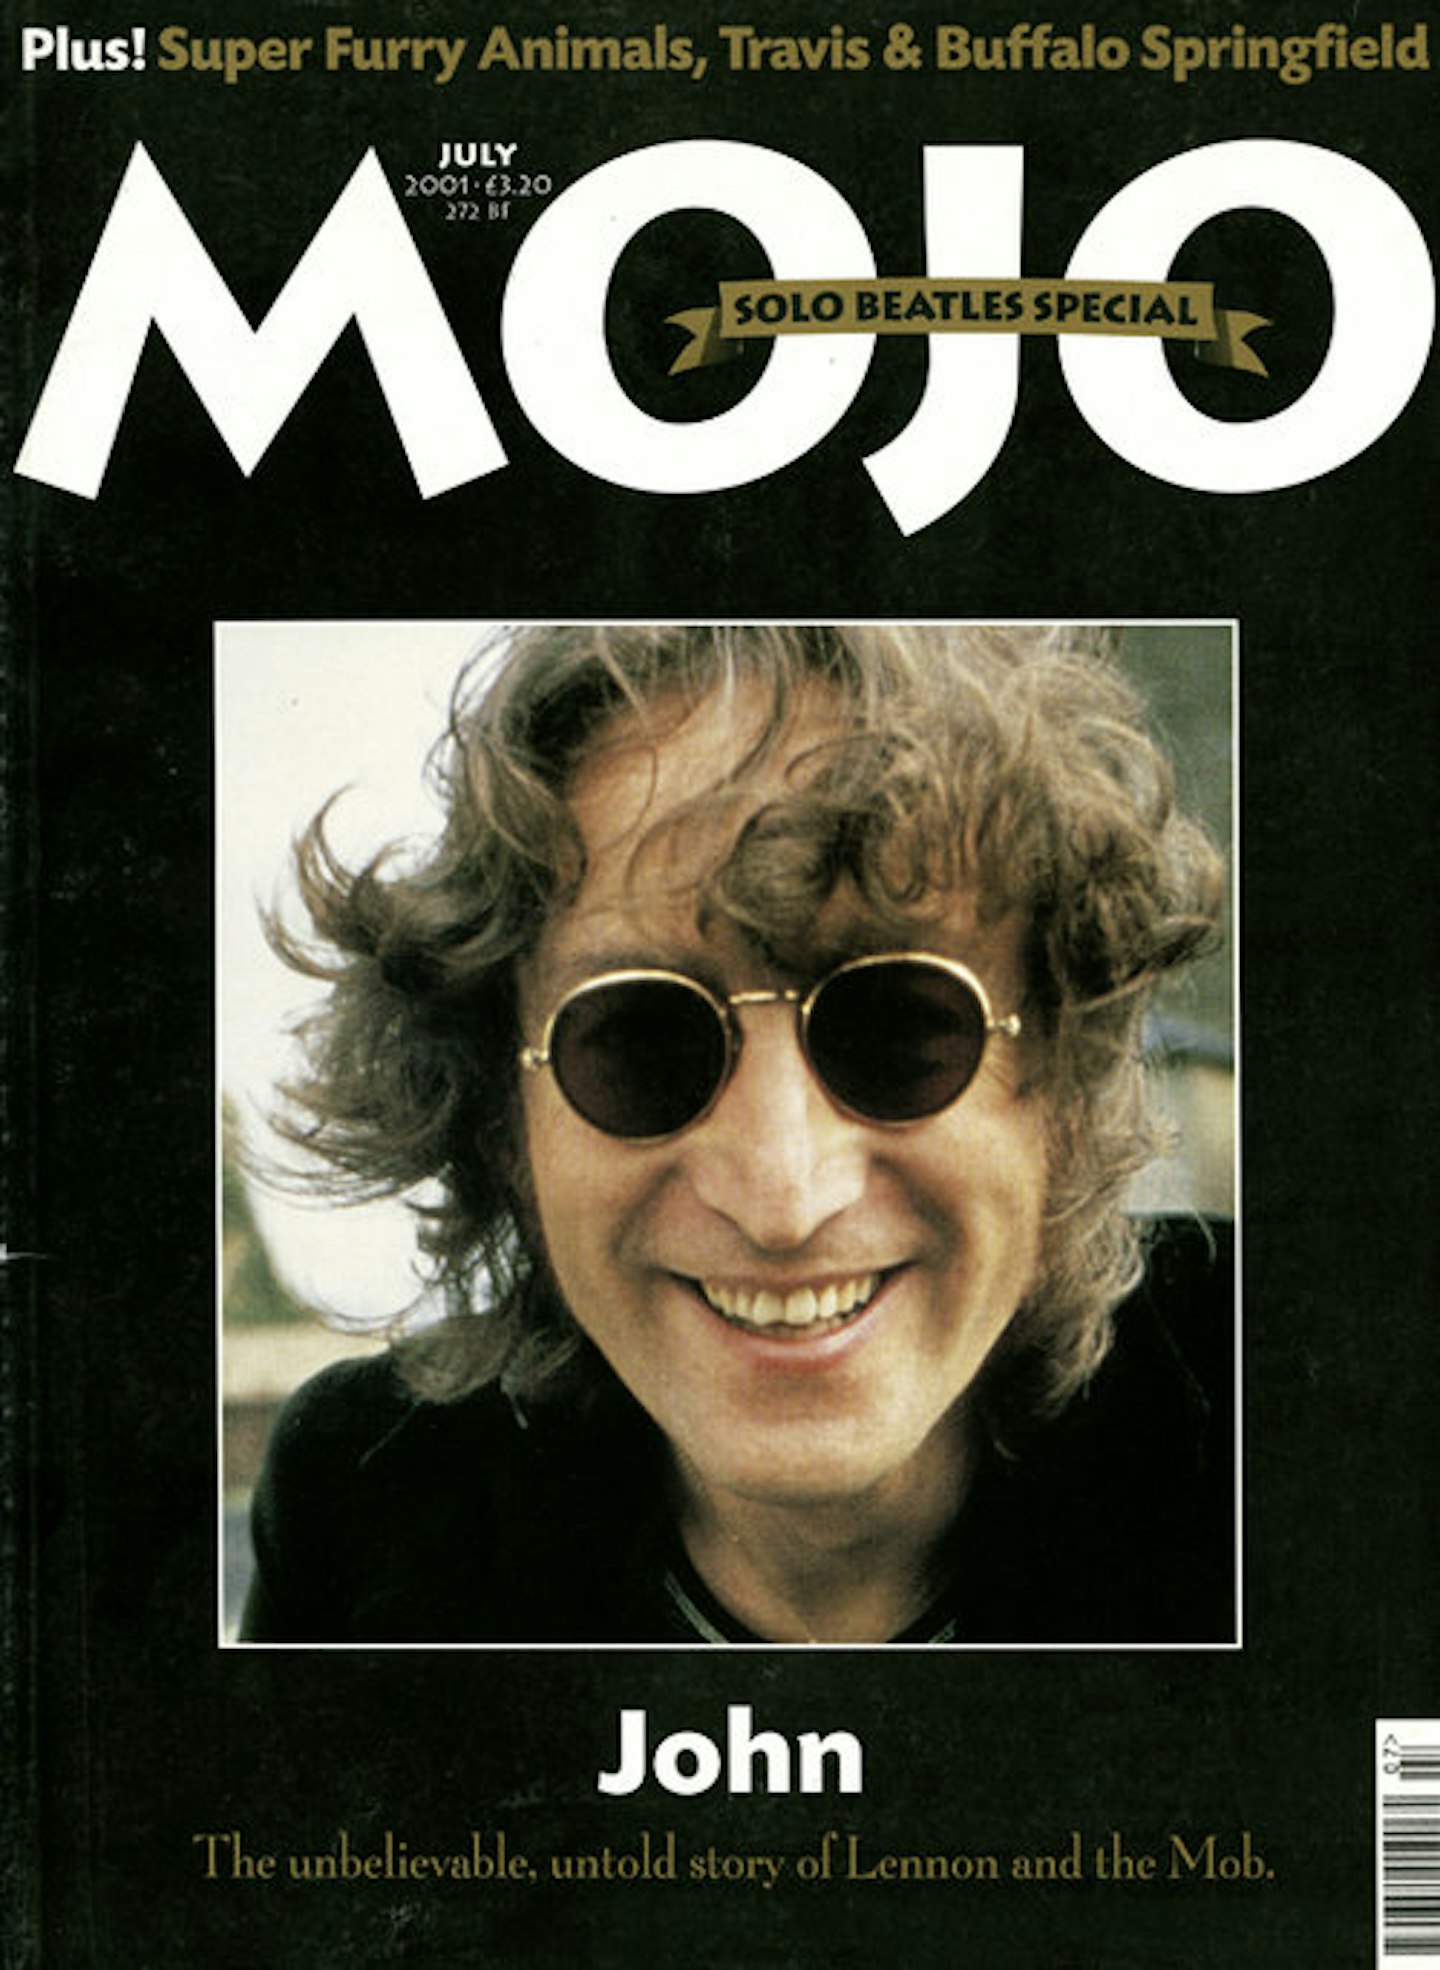 MOJO Issue 92 / July 2001 / John